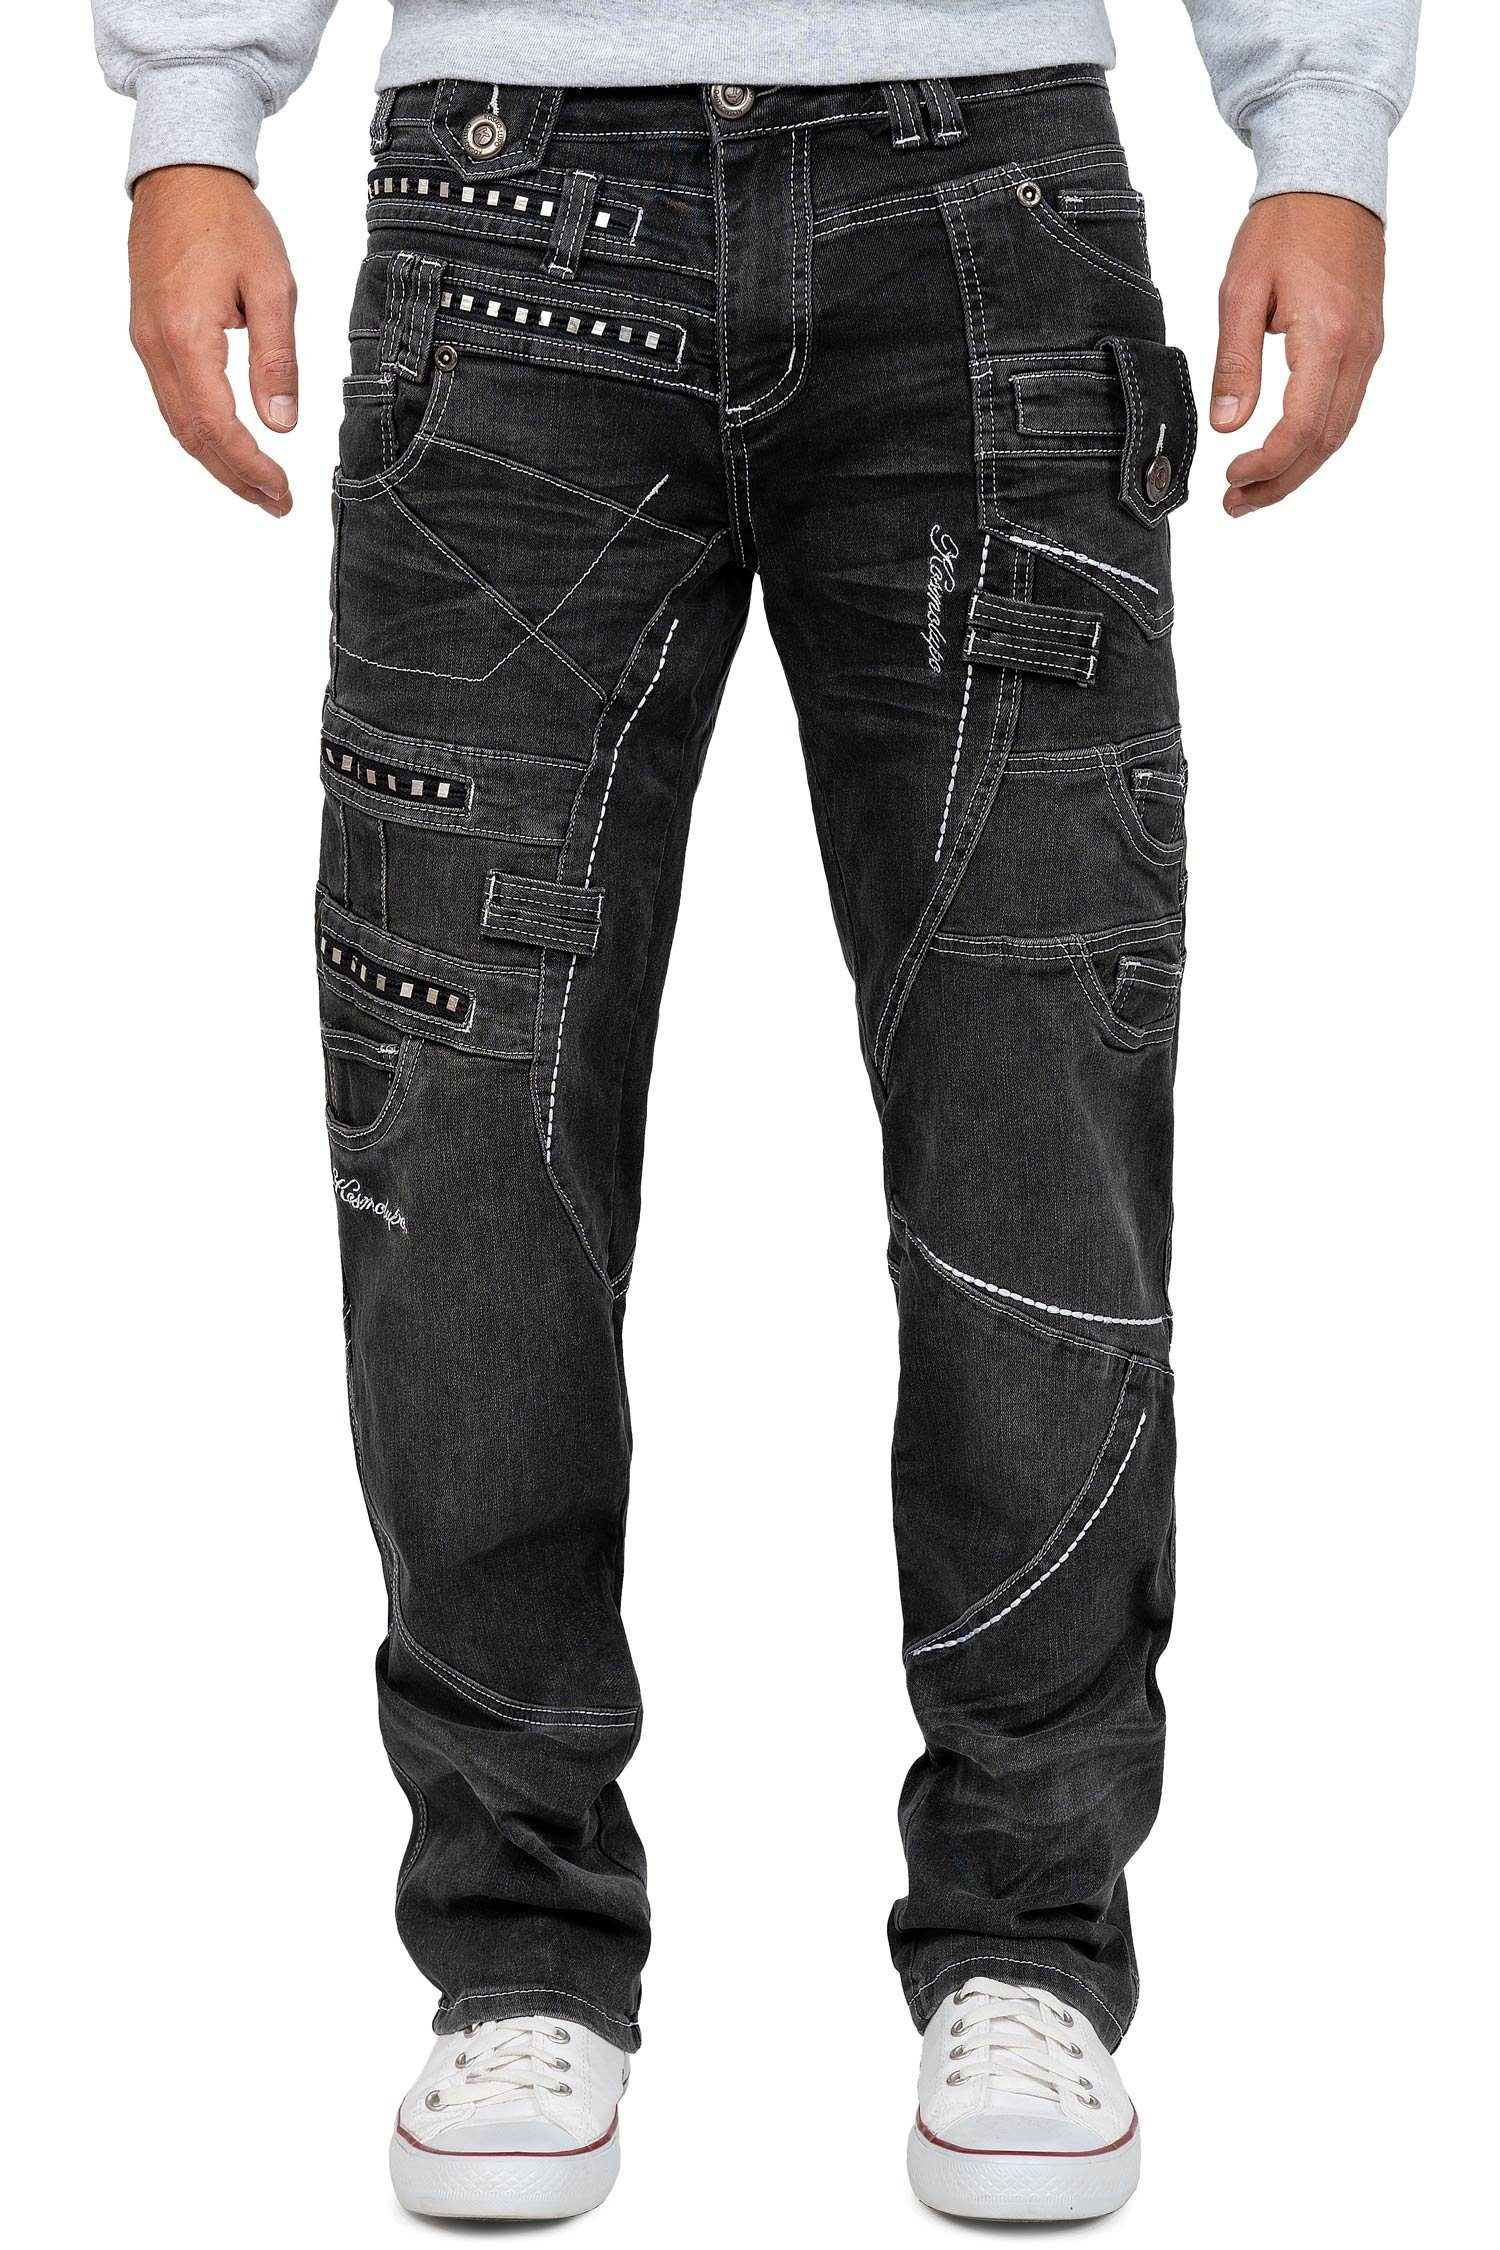 Kosmo Lupo 5-Pocket-Jeans Auffällige mit Verzierungen BA-KM001 grau und Herren Hose Nieten